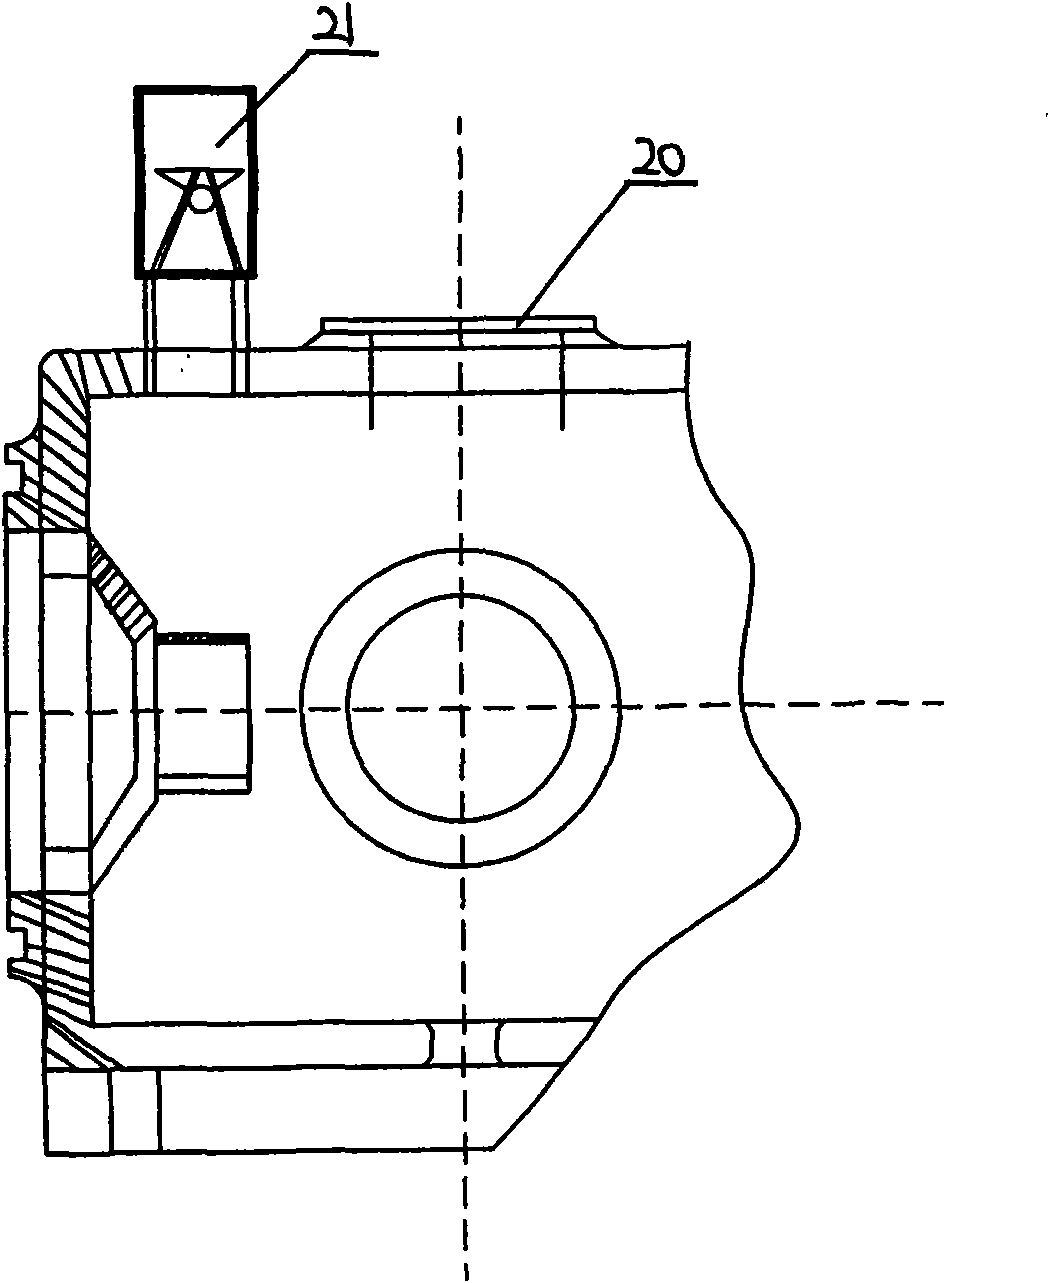 Oil-free pendulum type air compressor